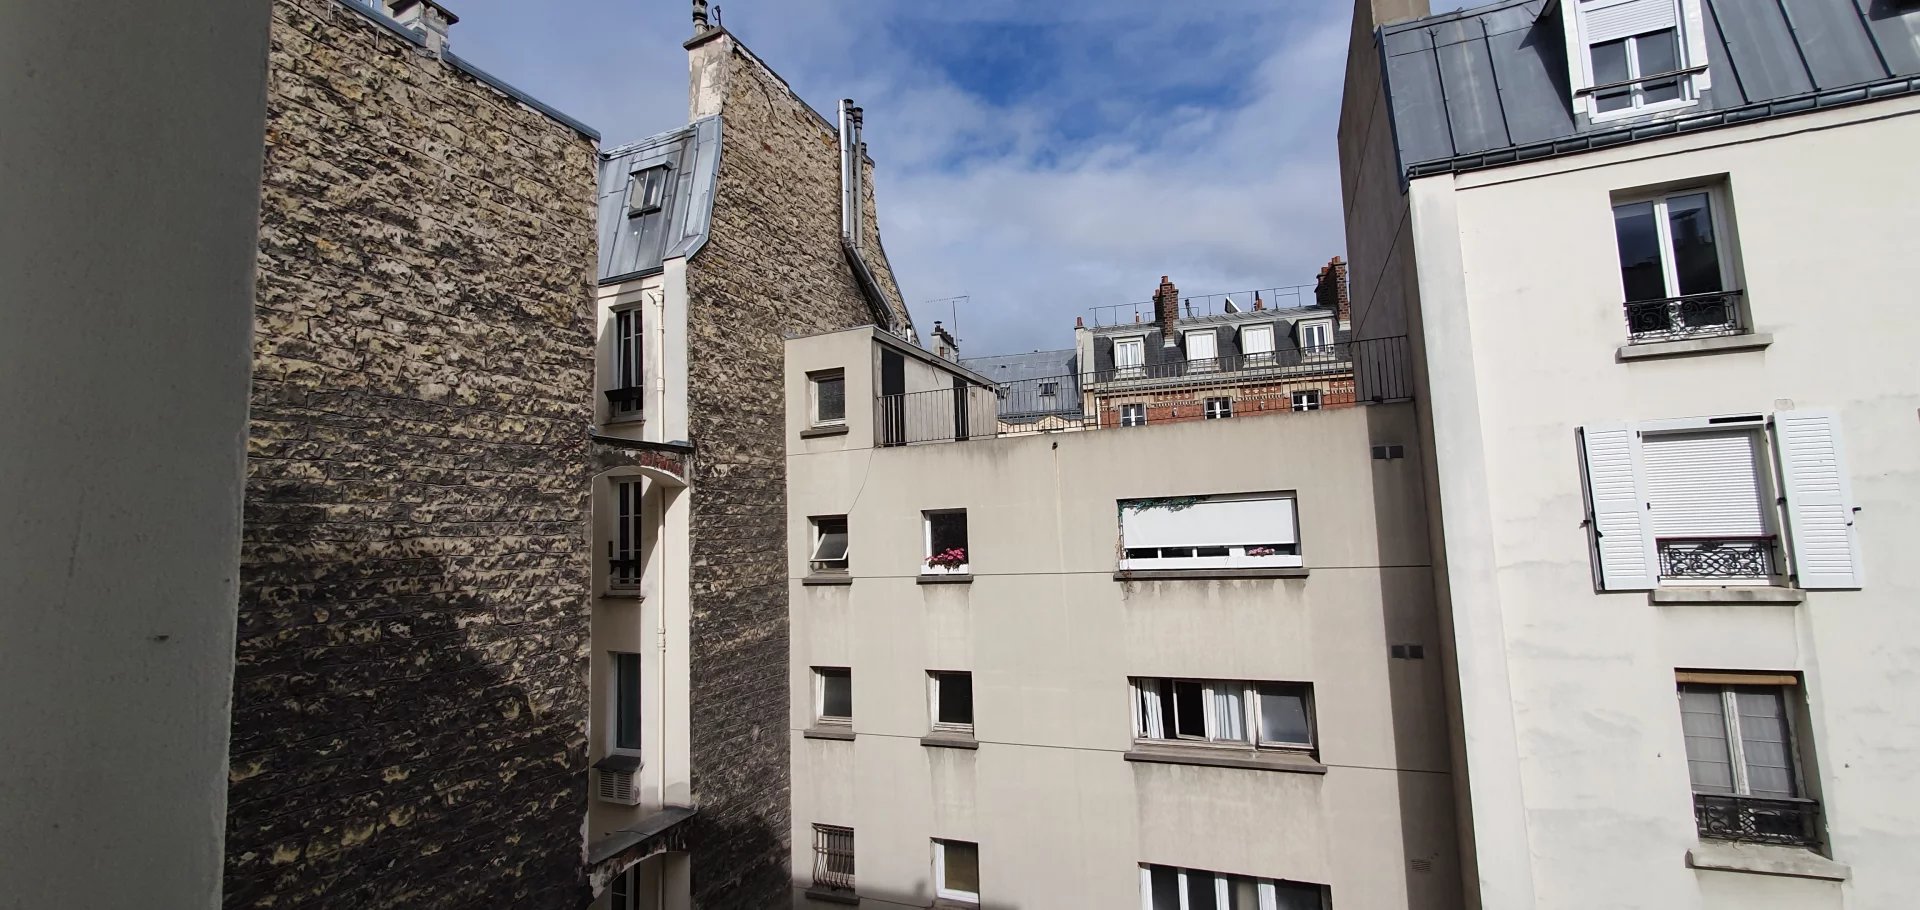 One-room apartment (T1bis) of 25.09 m² rue des Moines Paris 17ème